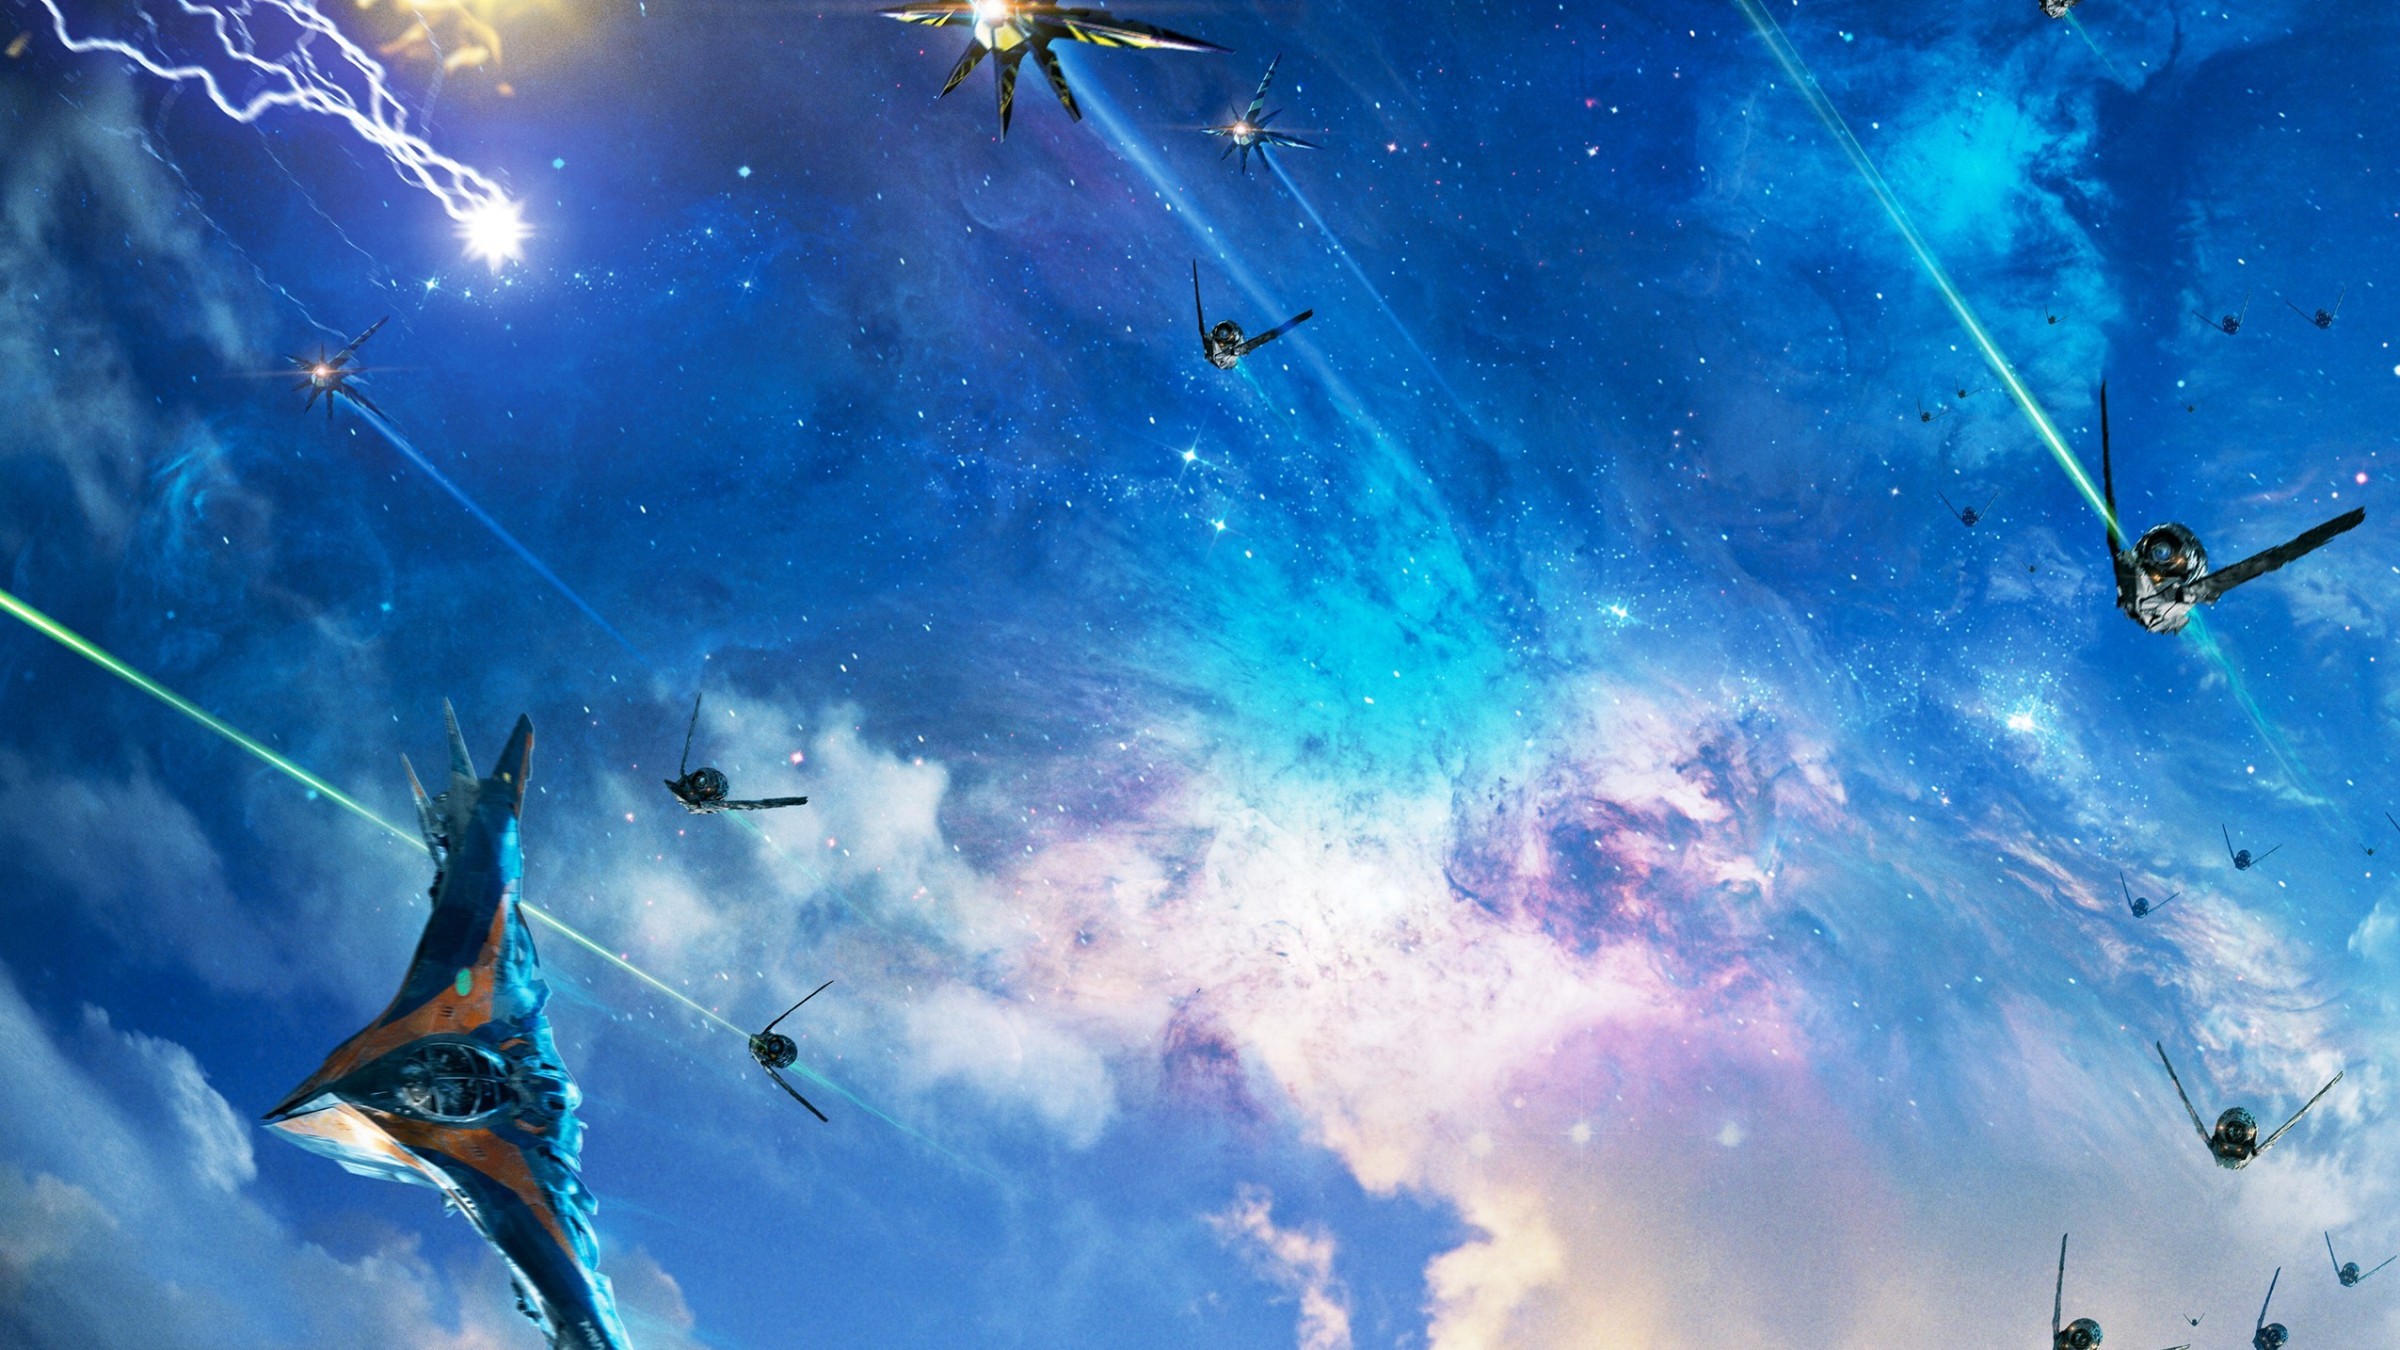 Descarga gratuita de fondo de pantalla para móvil de Películas, Guardianes De La Galaxia.